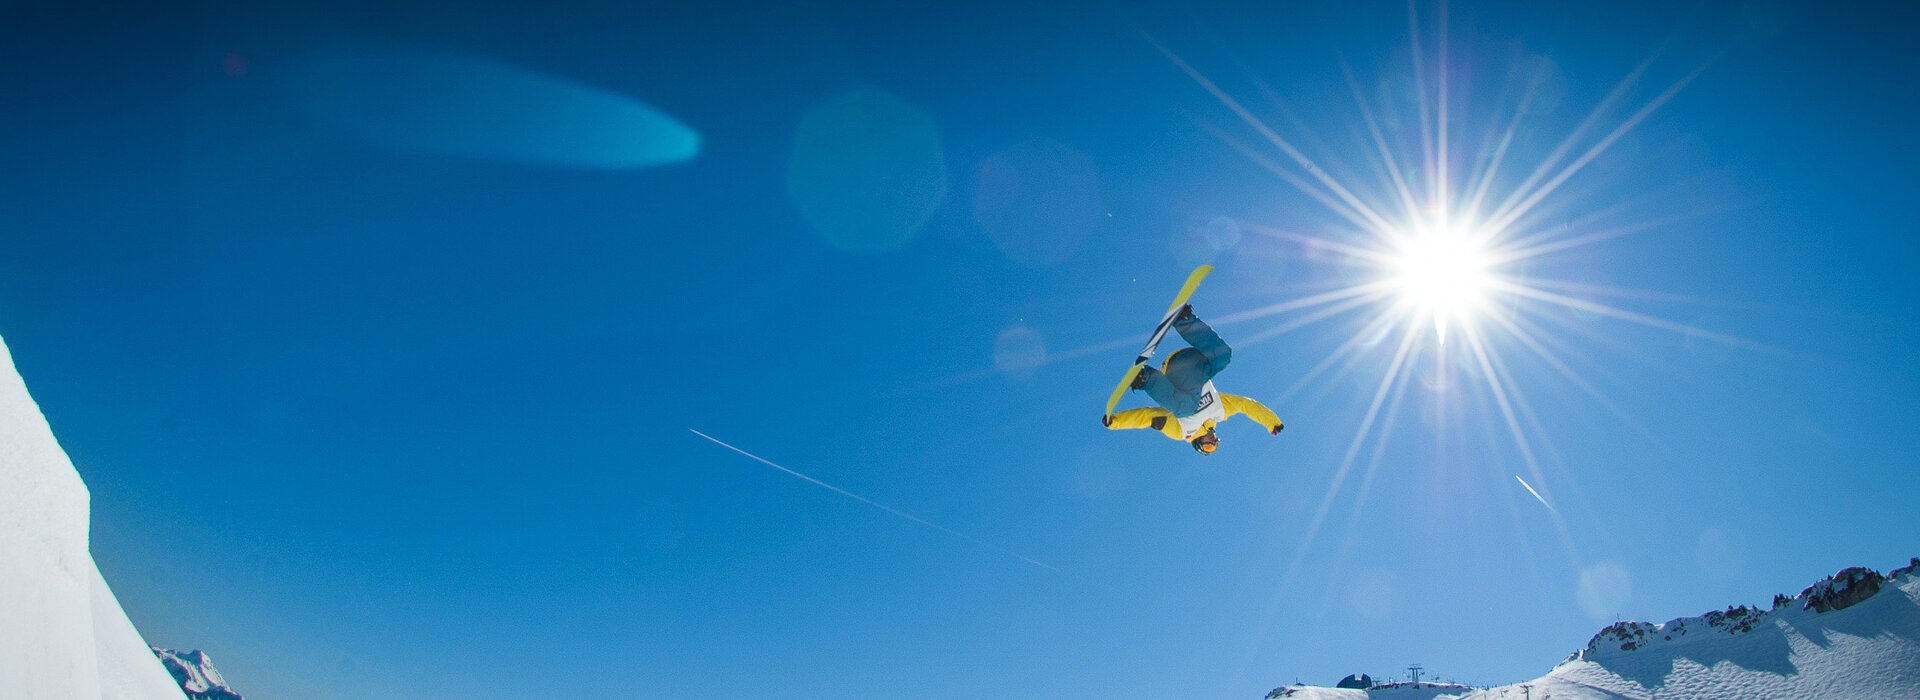 Reserver votre location de snowboard en ligne avec Lioran Sports dans le cantal